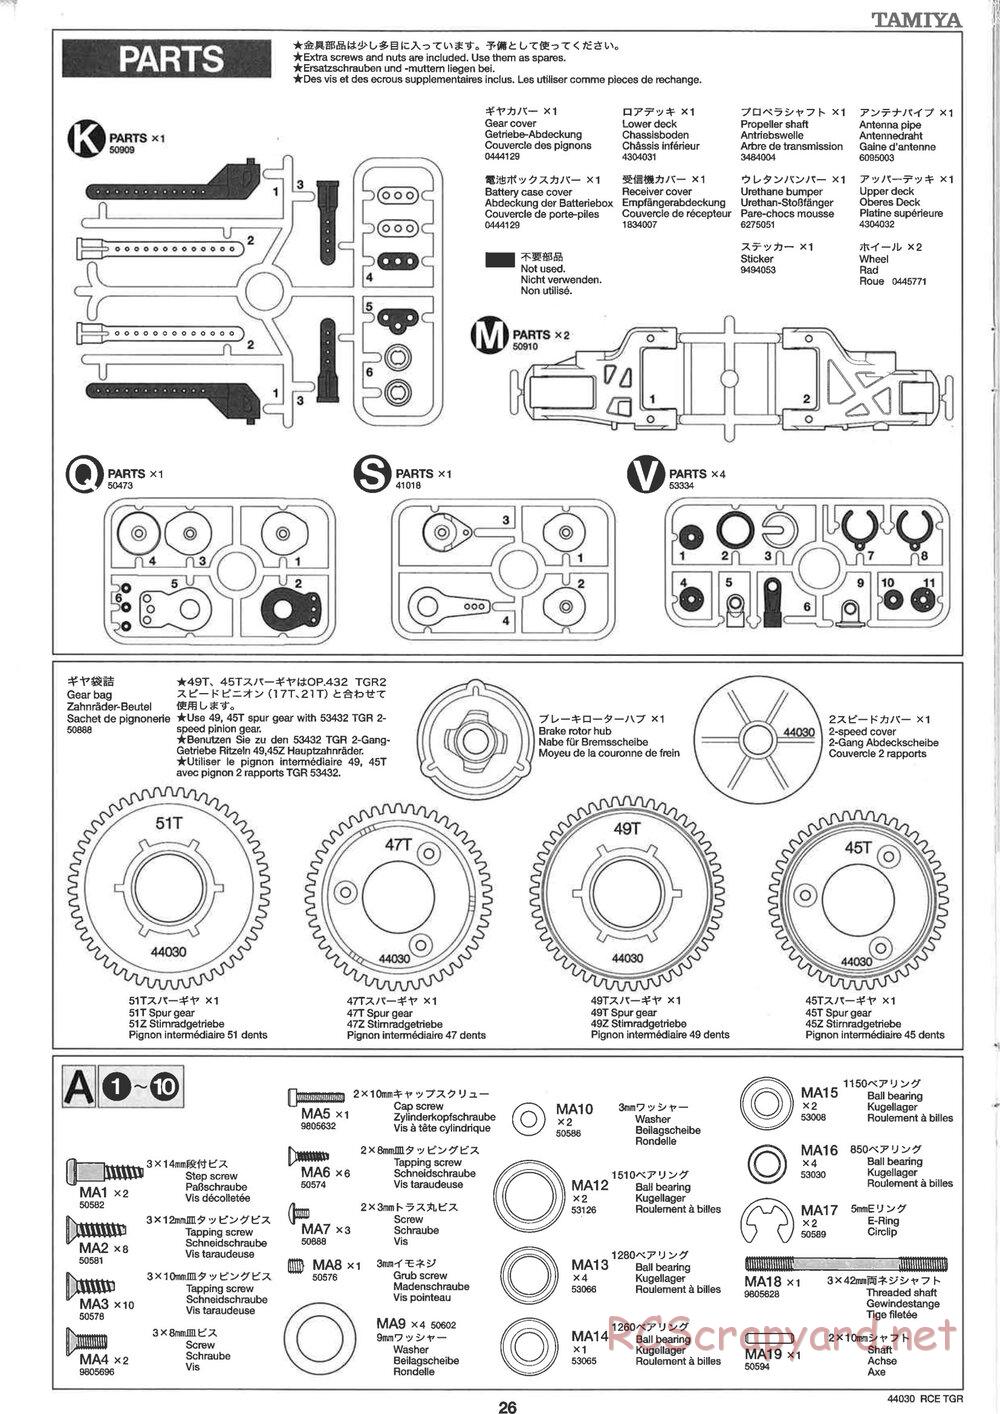 Tamiya - TG10R Chassis - Manual - Page 26